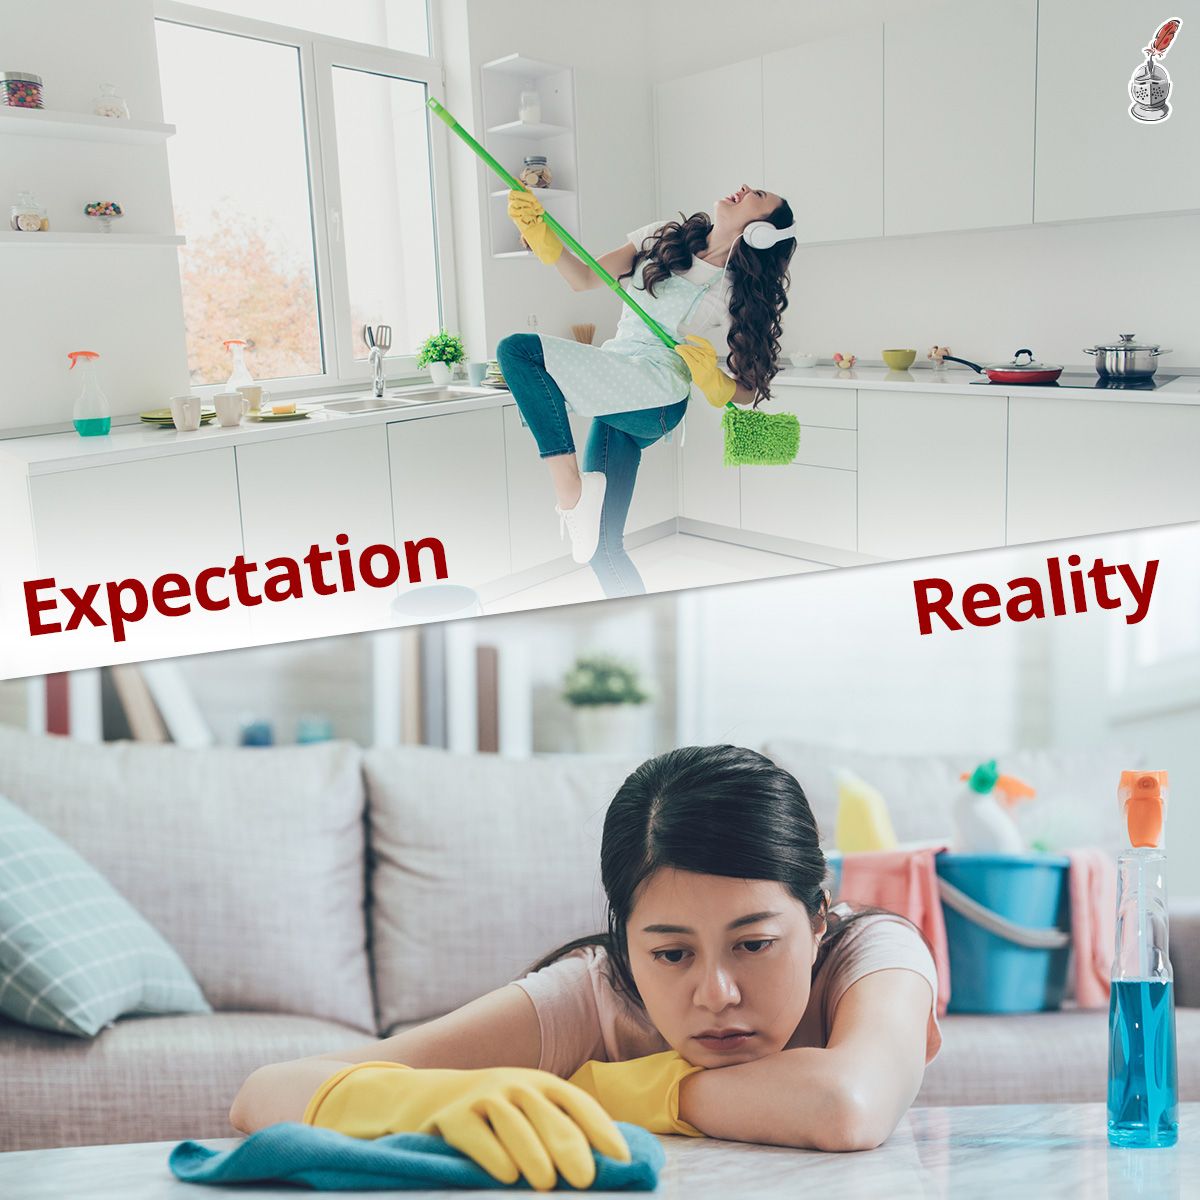 Expectation - Reality